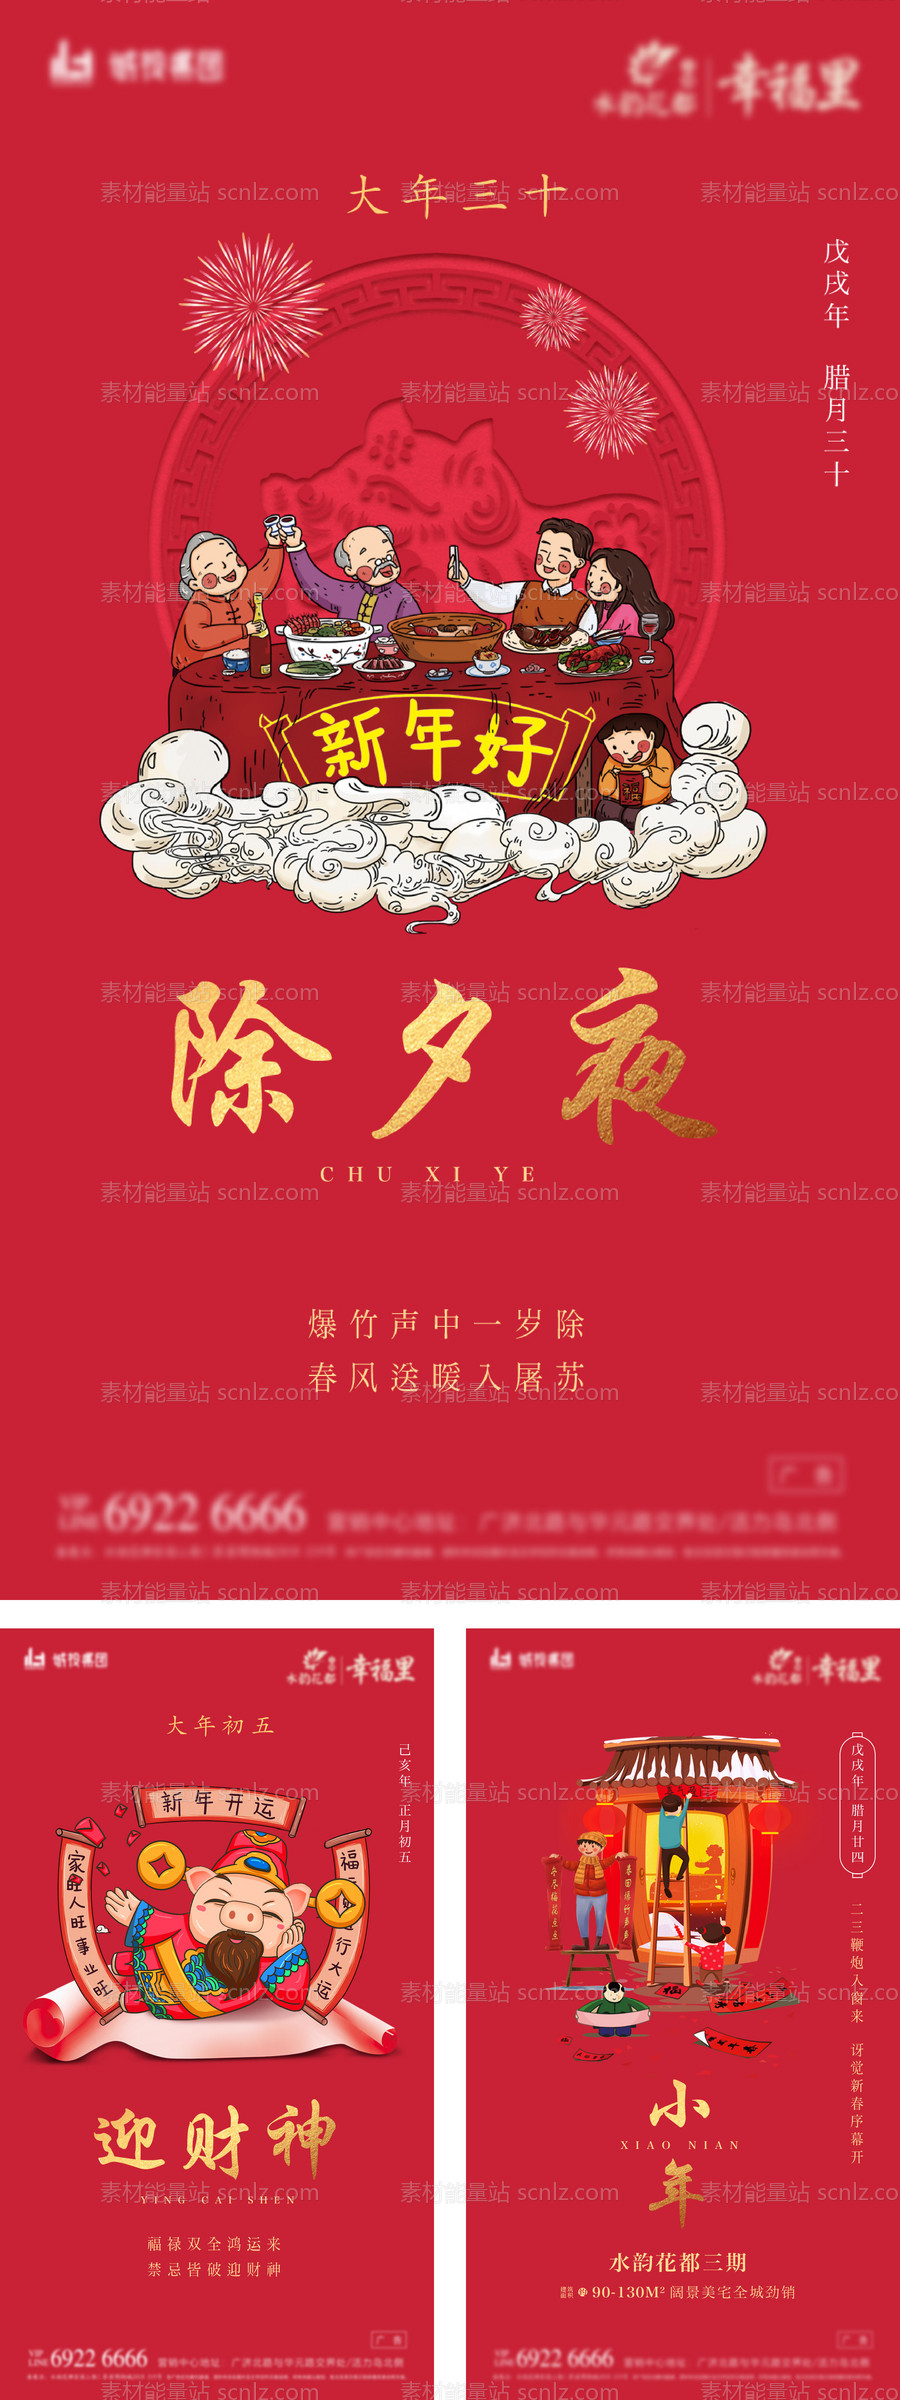 素材能量站-房地产春节节日系列海报